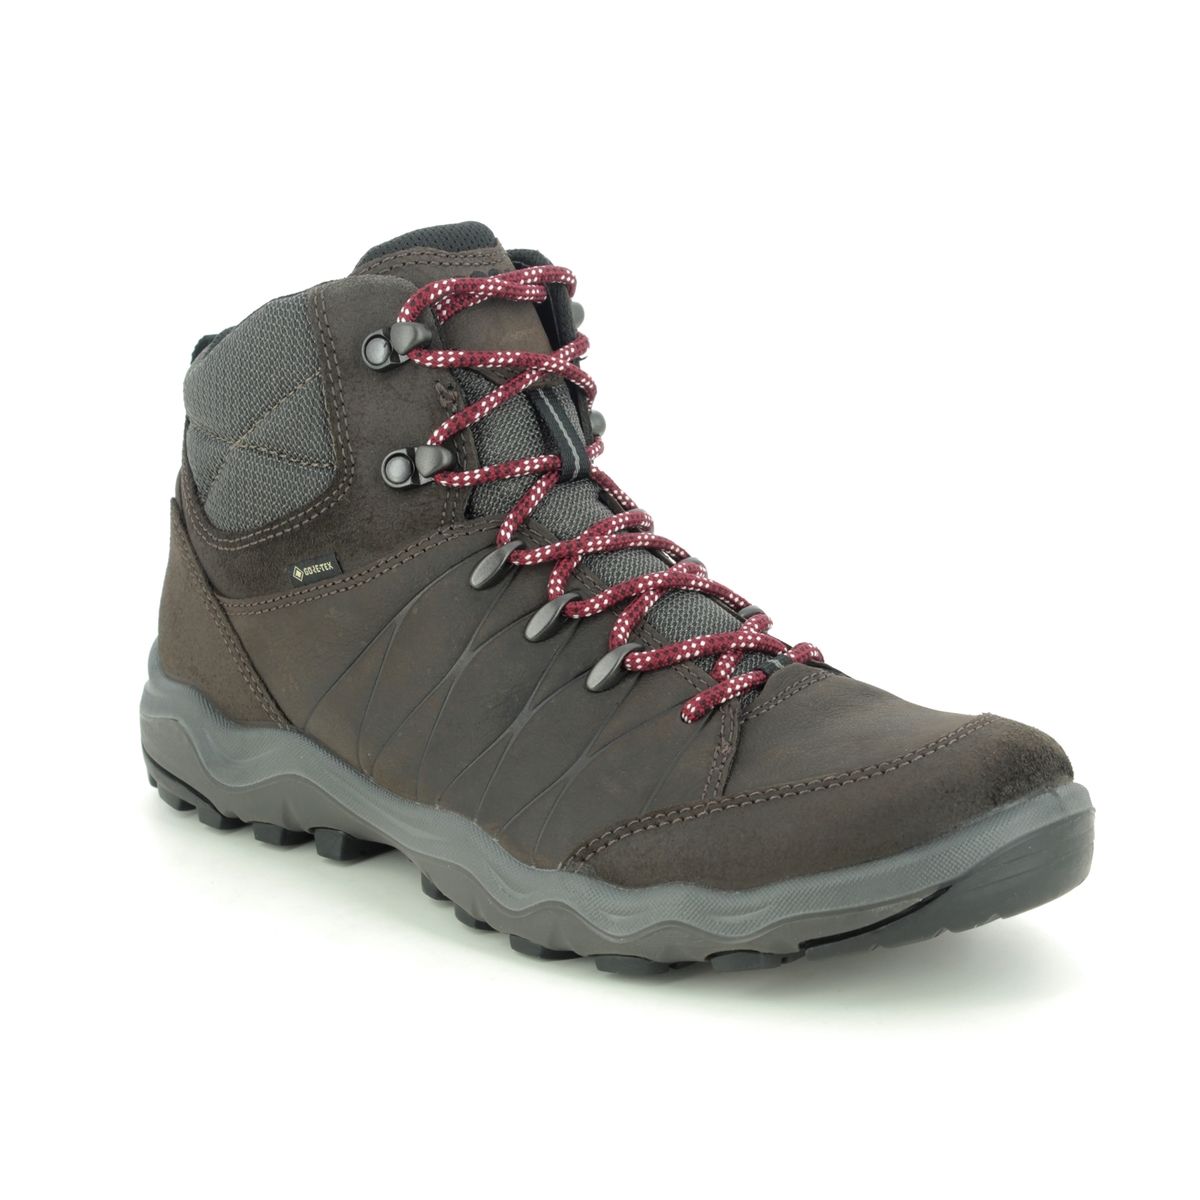 Dominant Metafoor chocola ECCO Ulterra Mens Gore 823224-55821 Brown leather Outdoor Walking Boots